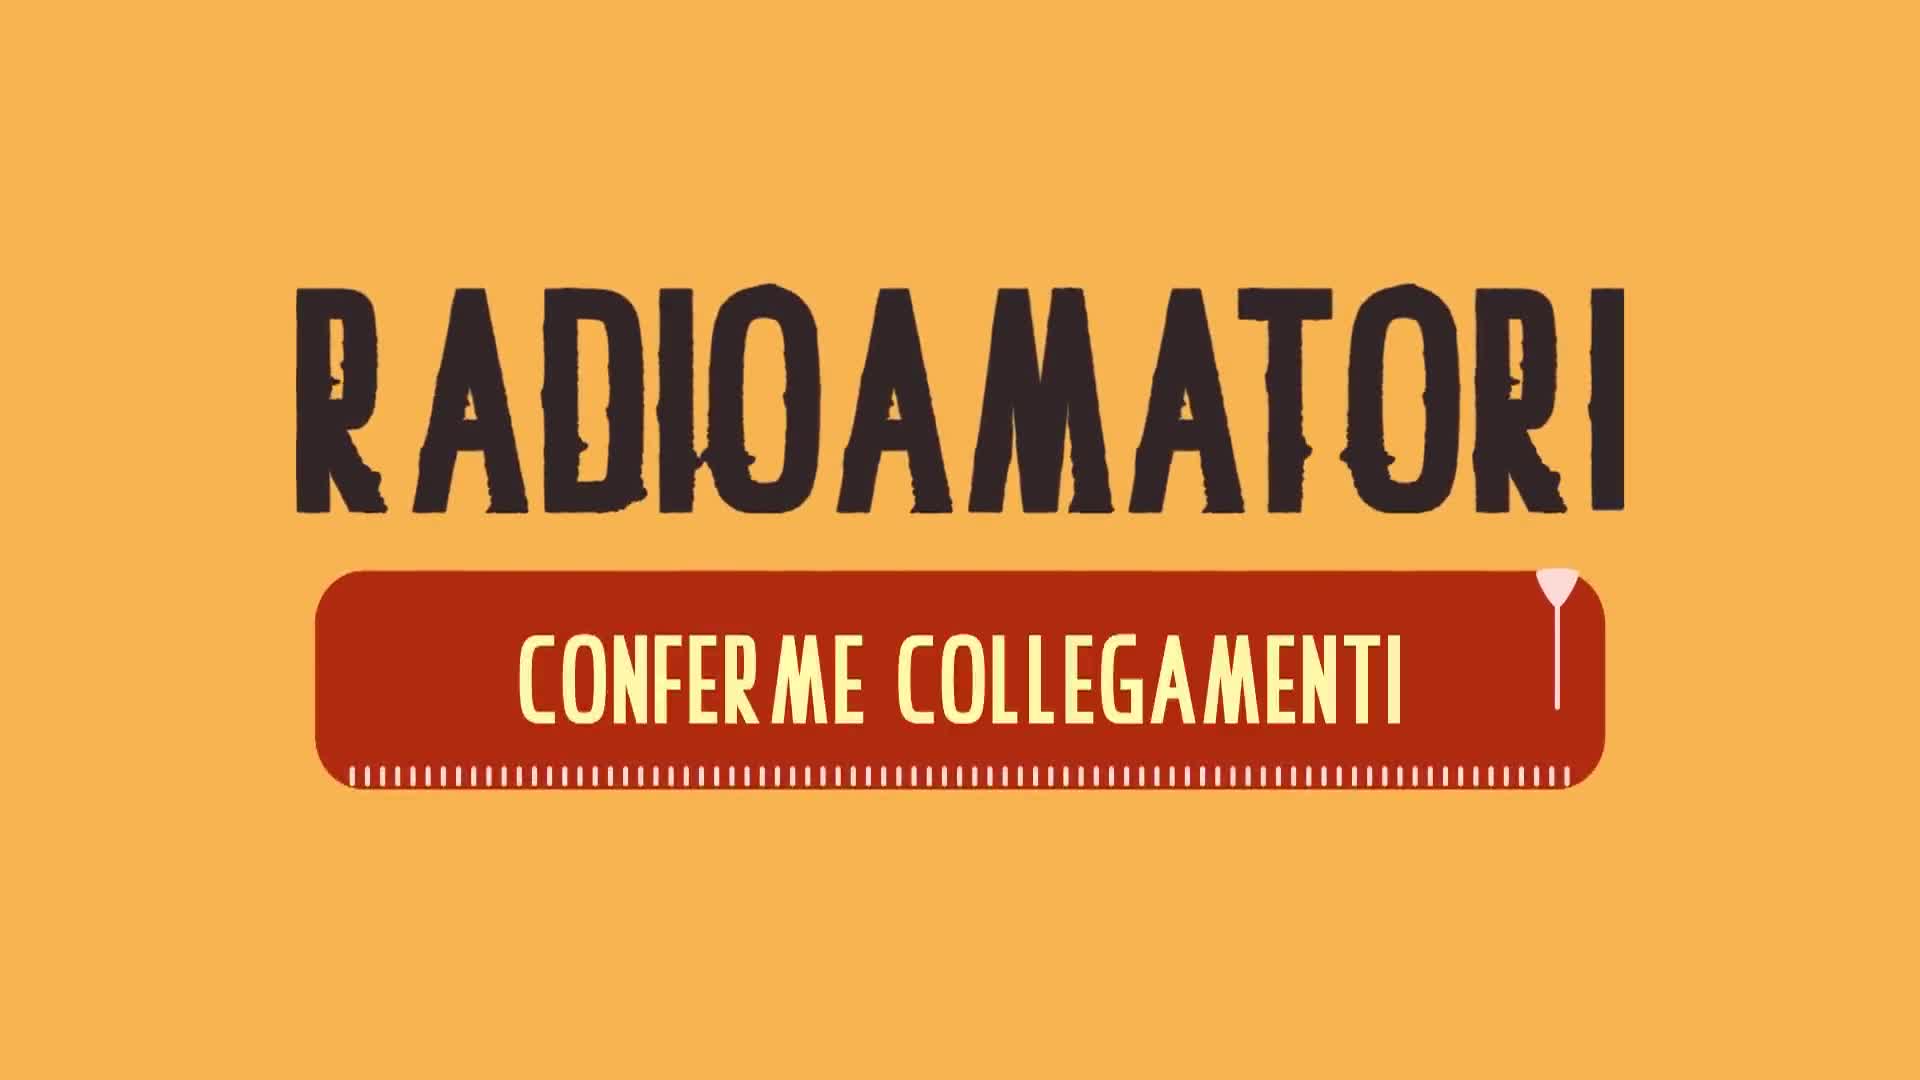 Radioamatori | Conferme Collegamenti - immagine